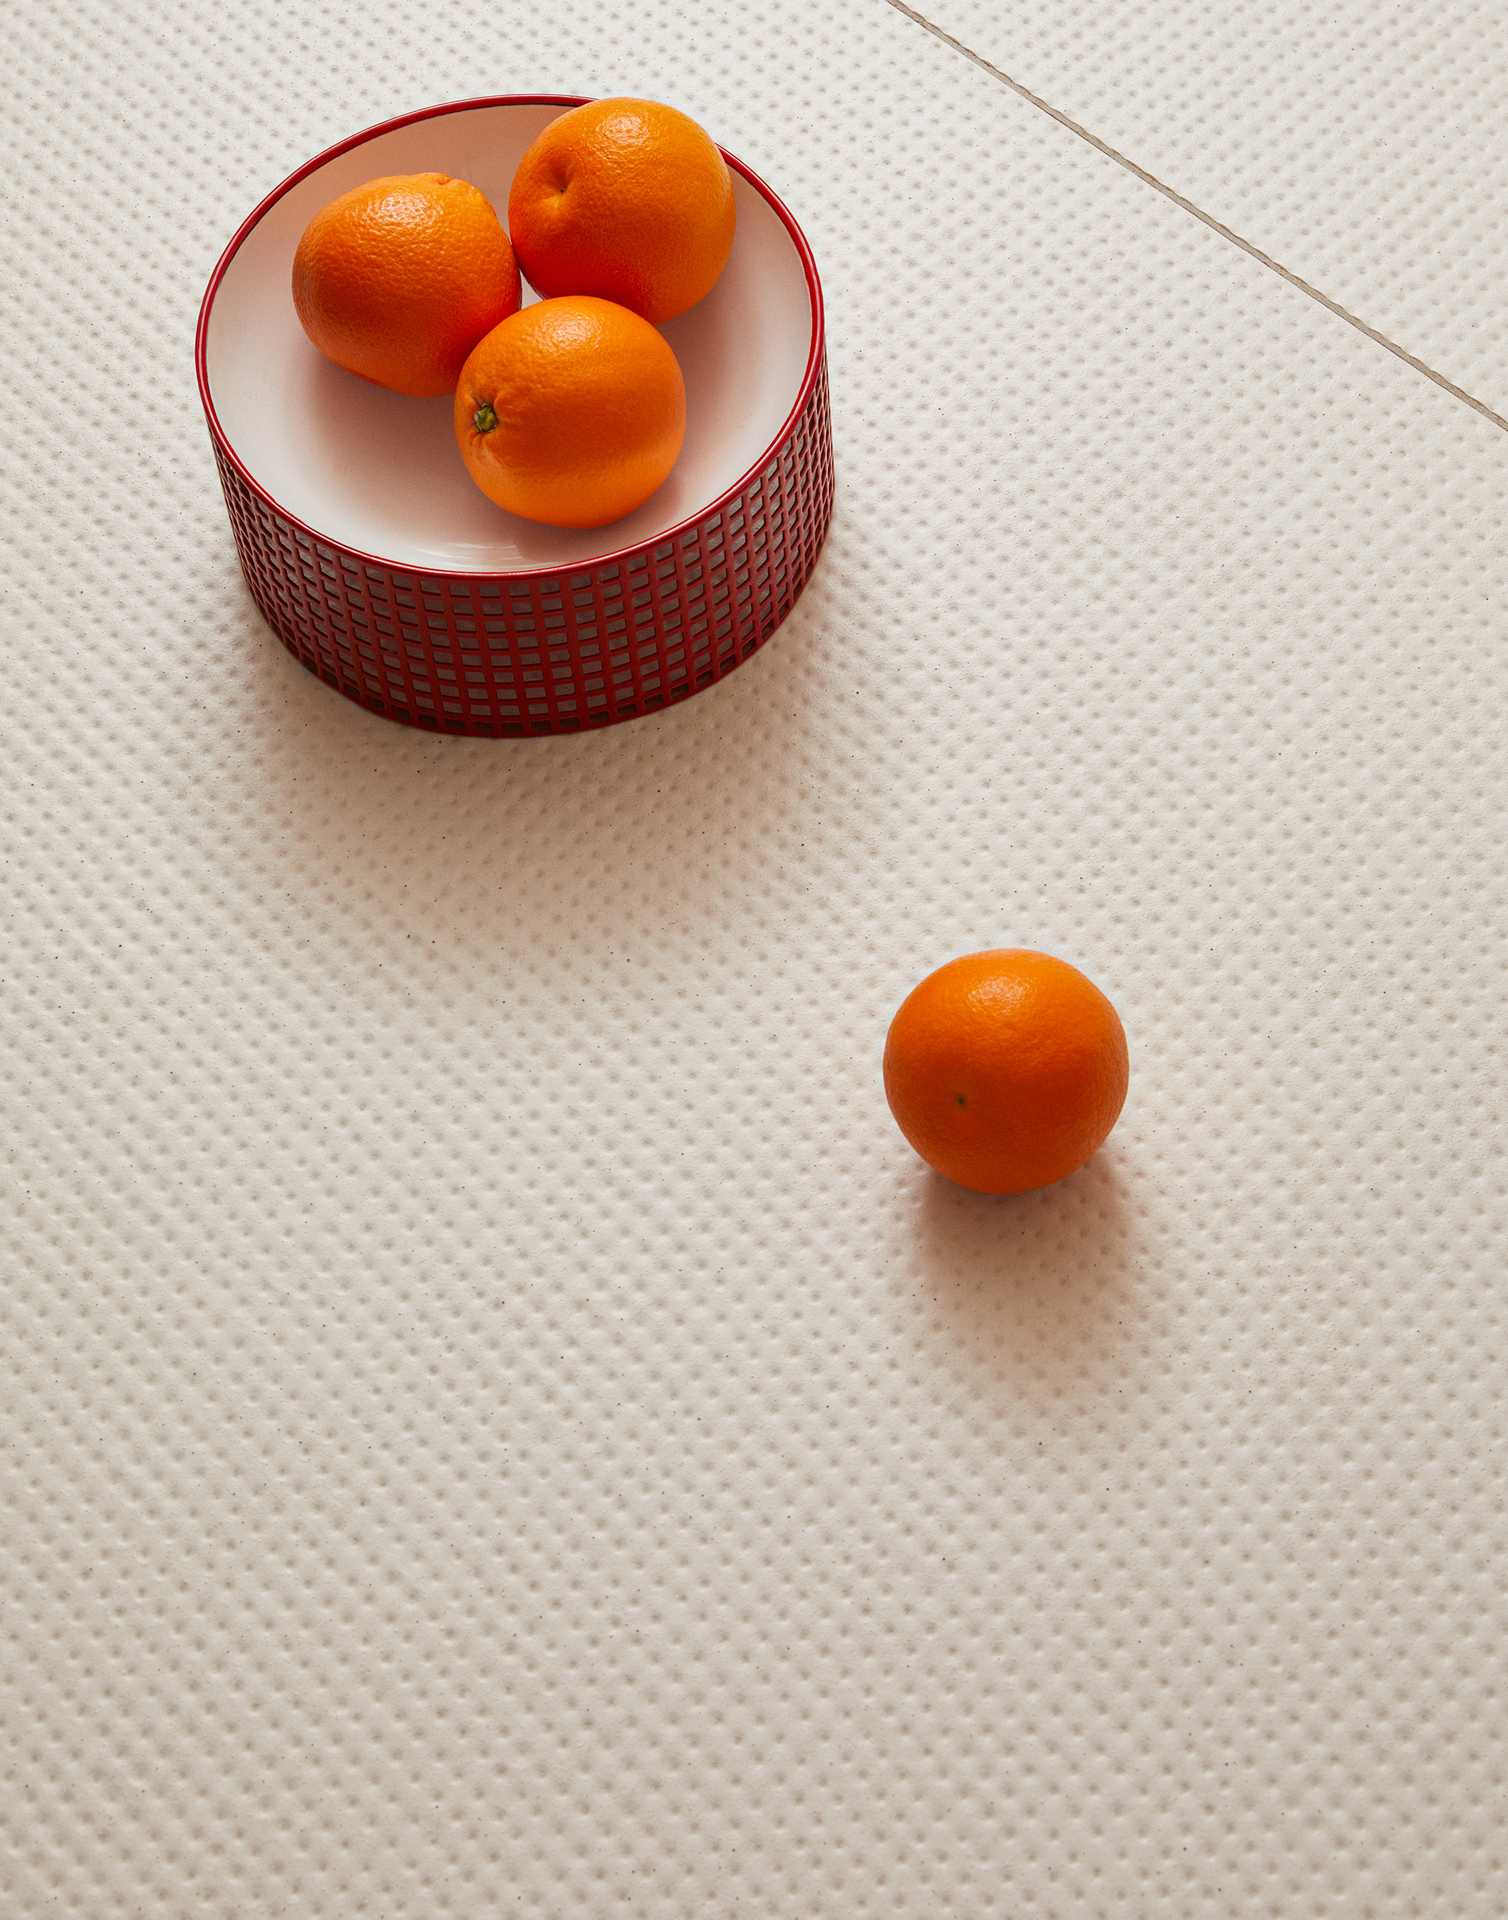 Revestimento com fundo claro e pequenos pontos aprofundados, com pingos em vermelho. Há uma cesta com laranjas sobre ele